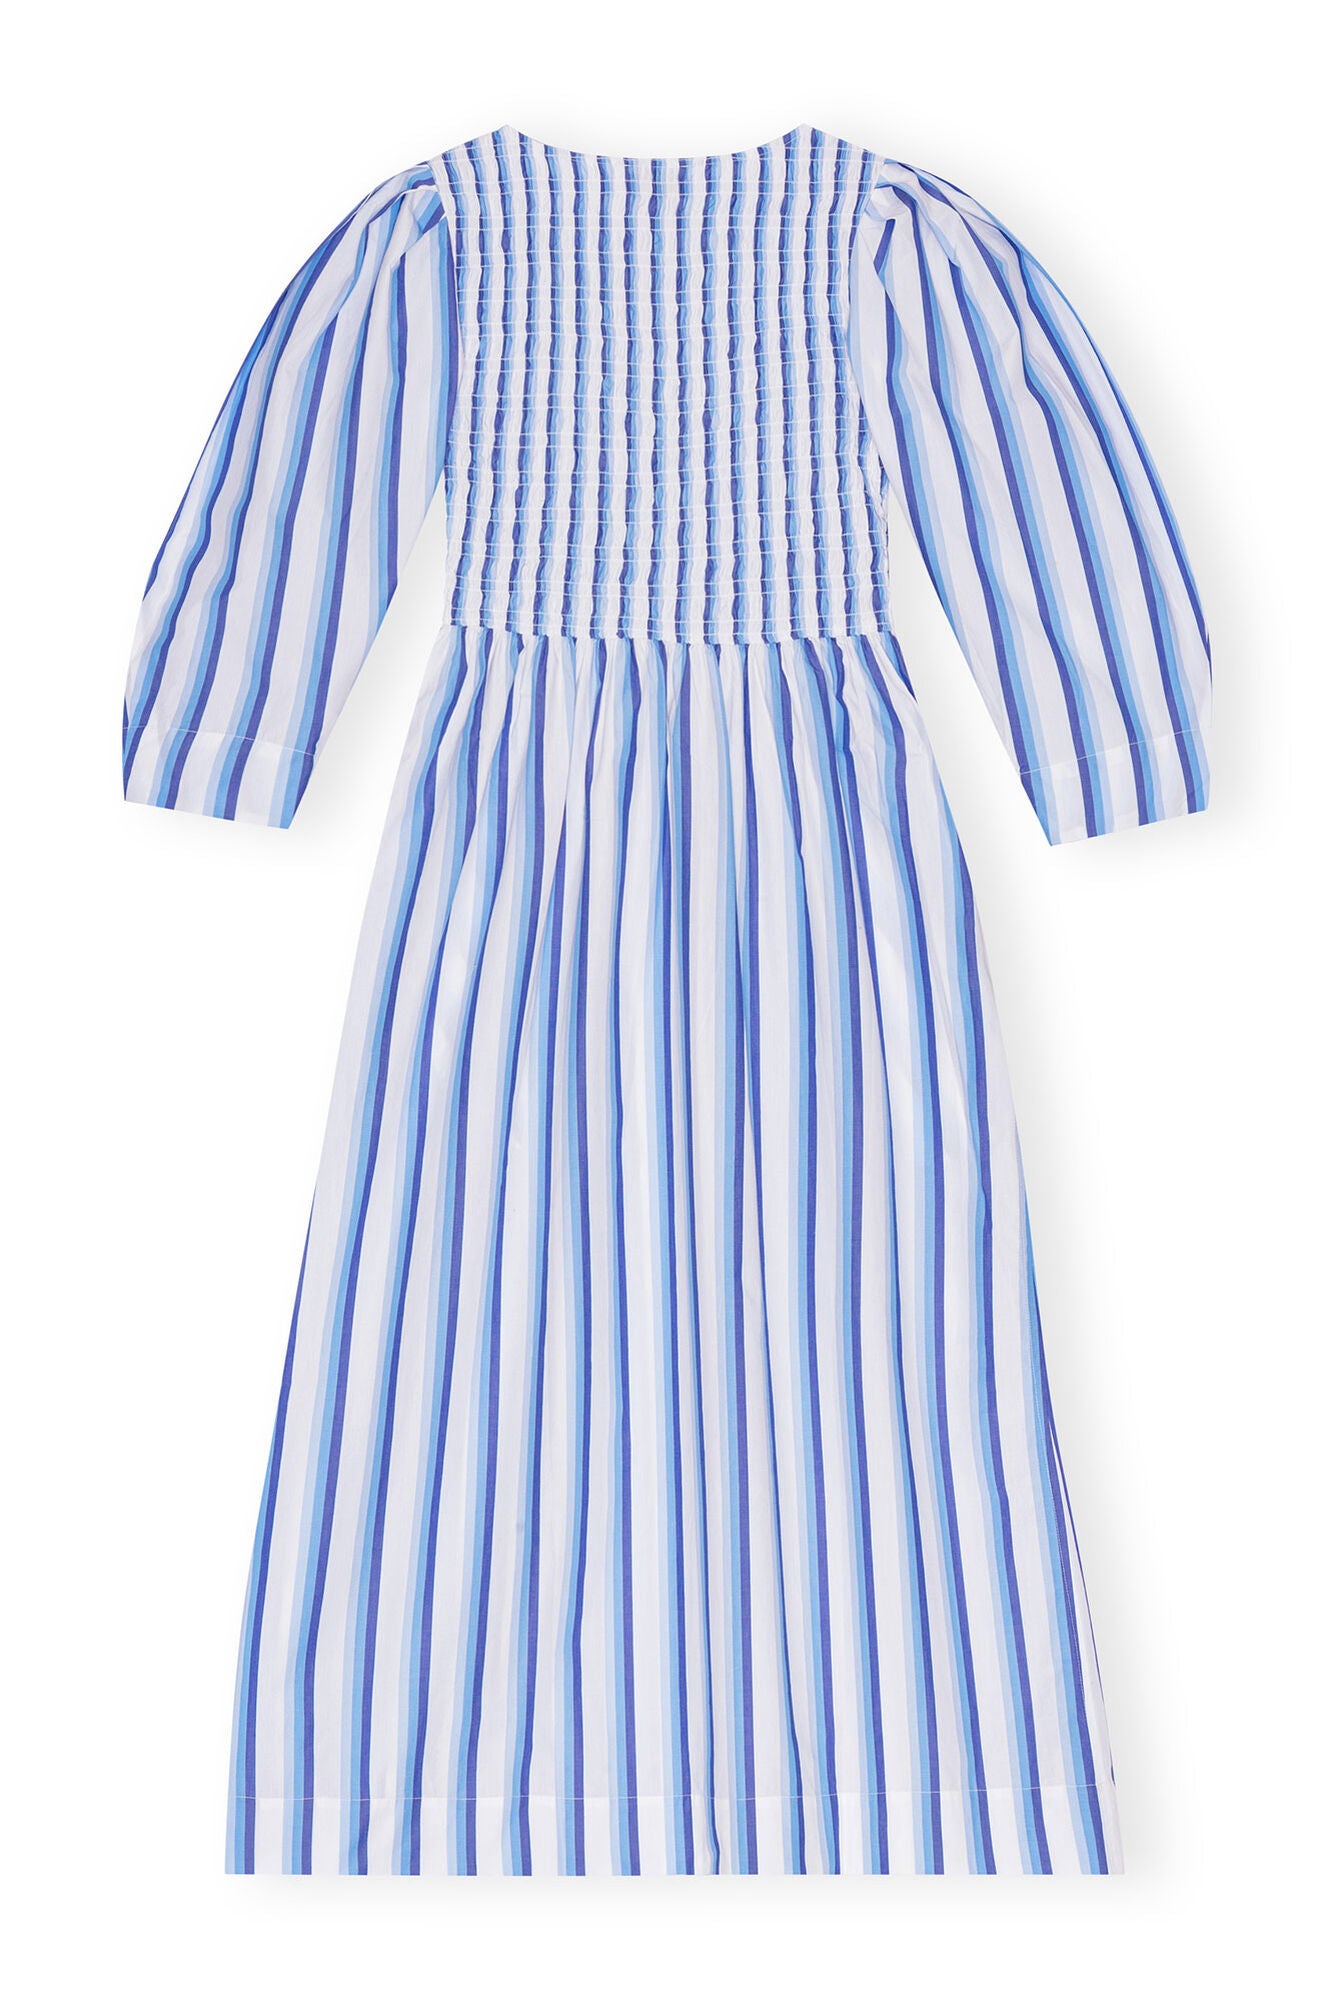 Stripe Cotton Open-Neck Smock Long Dress - Silver Lake Blue